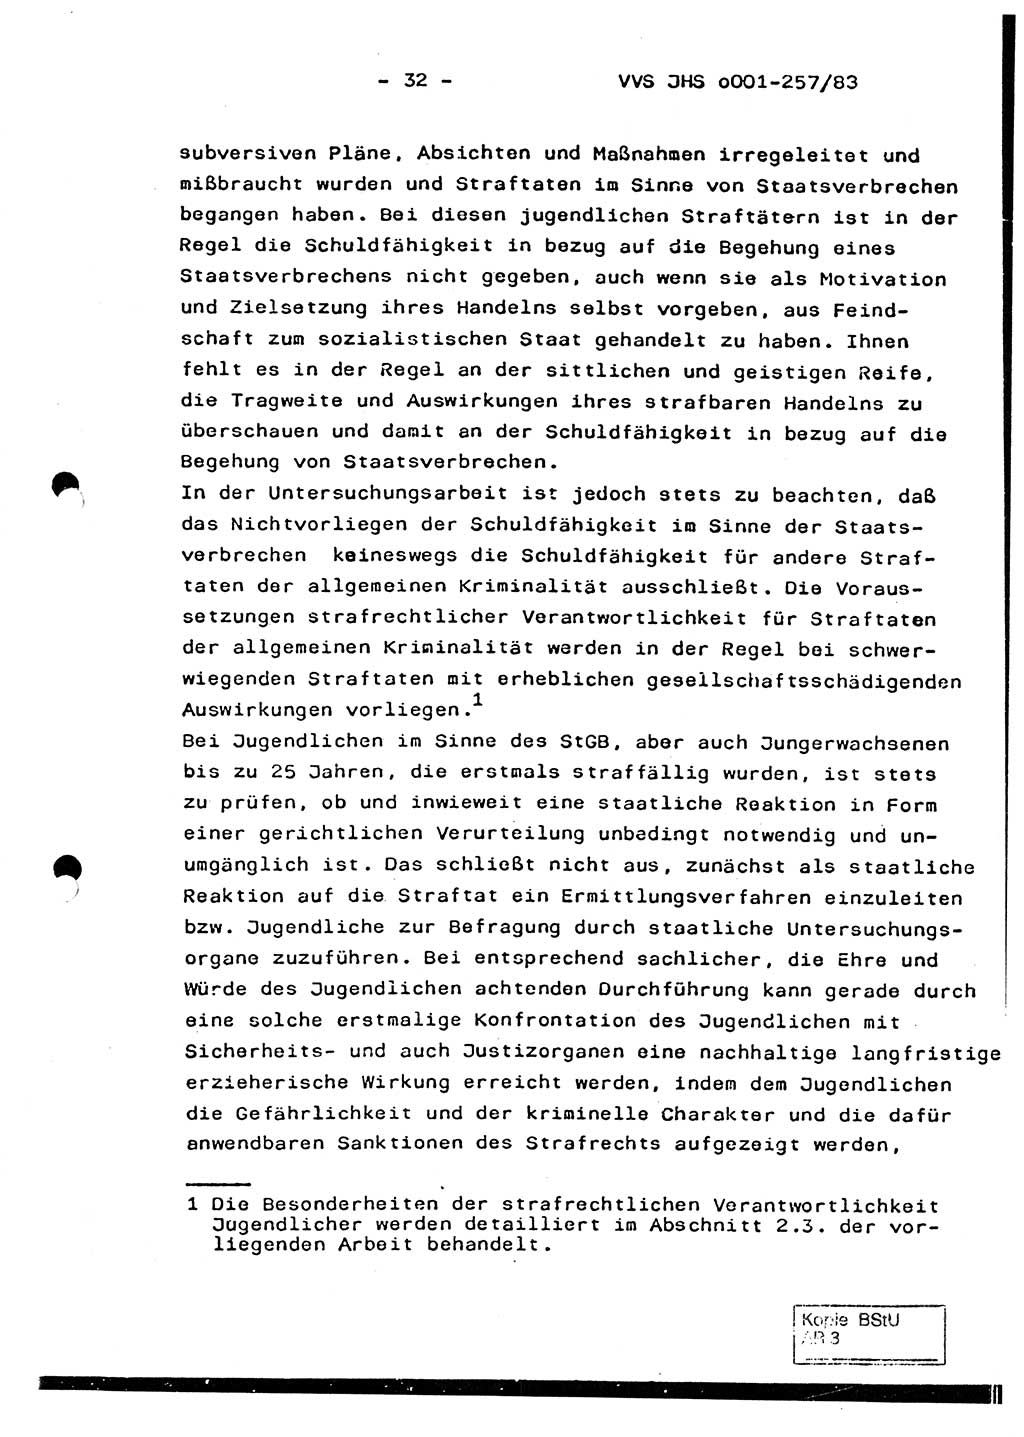 Dissertation, Oberst Helmut Lubas (BV Mdg.), Oberstleutnant Manfred Eschberger (HA IX), Oberleutnant Hans-Jürgen Ludwig (JHS), Ministerium für Staatssicherheit (MfS) [Deutsche Demokratische Republik (DDR)], Juristische Hochschule (JHS), Vertrauliche Verschlußsache (VVS) o001-257/83, Potsdam 1983, Seite 32 (Diss. MfS DDR JHS VVS o001-257/83 1983, S. 32)